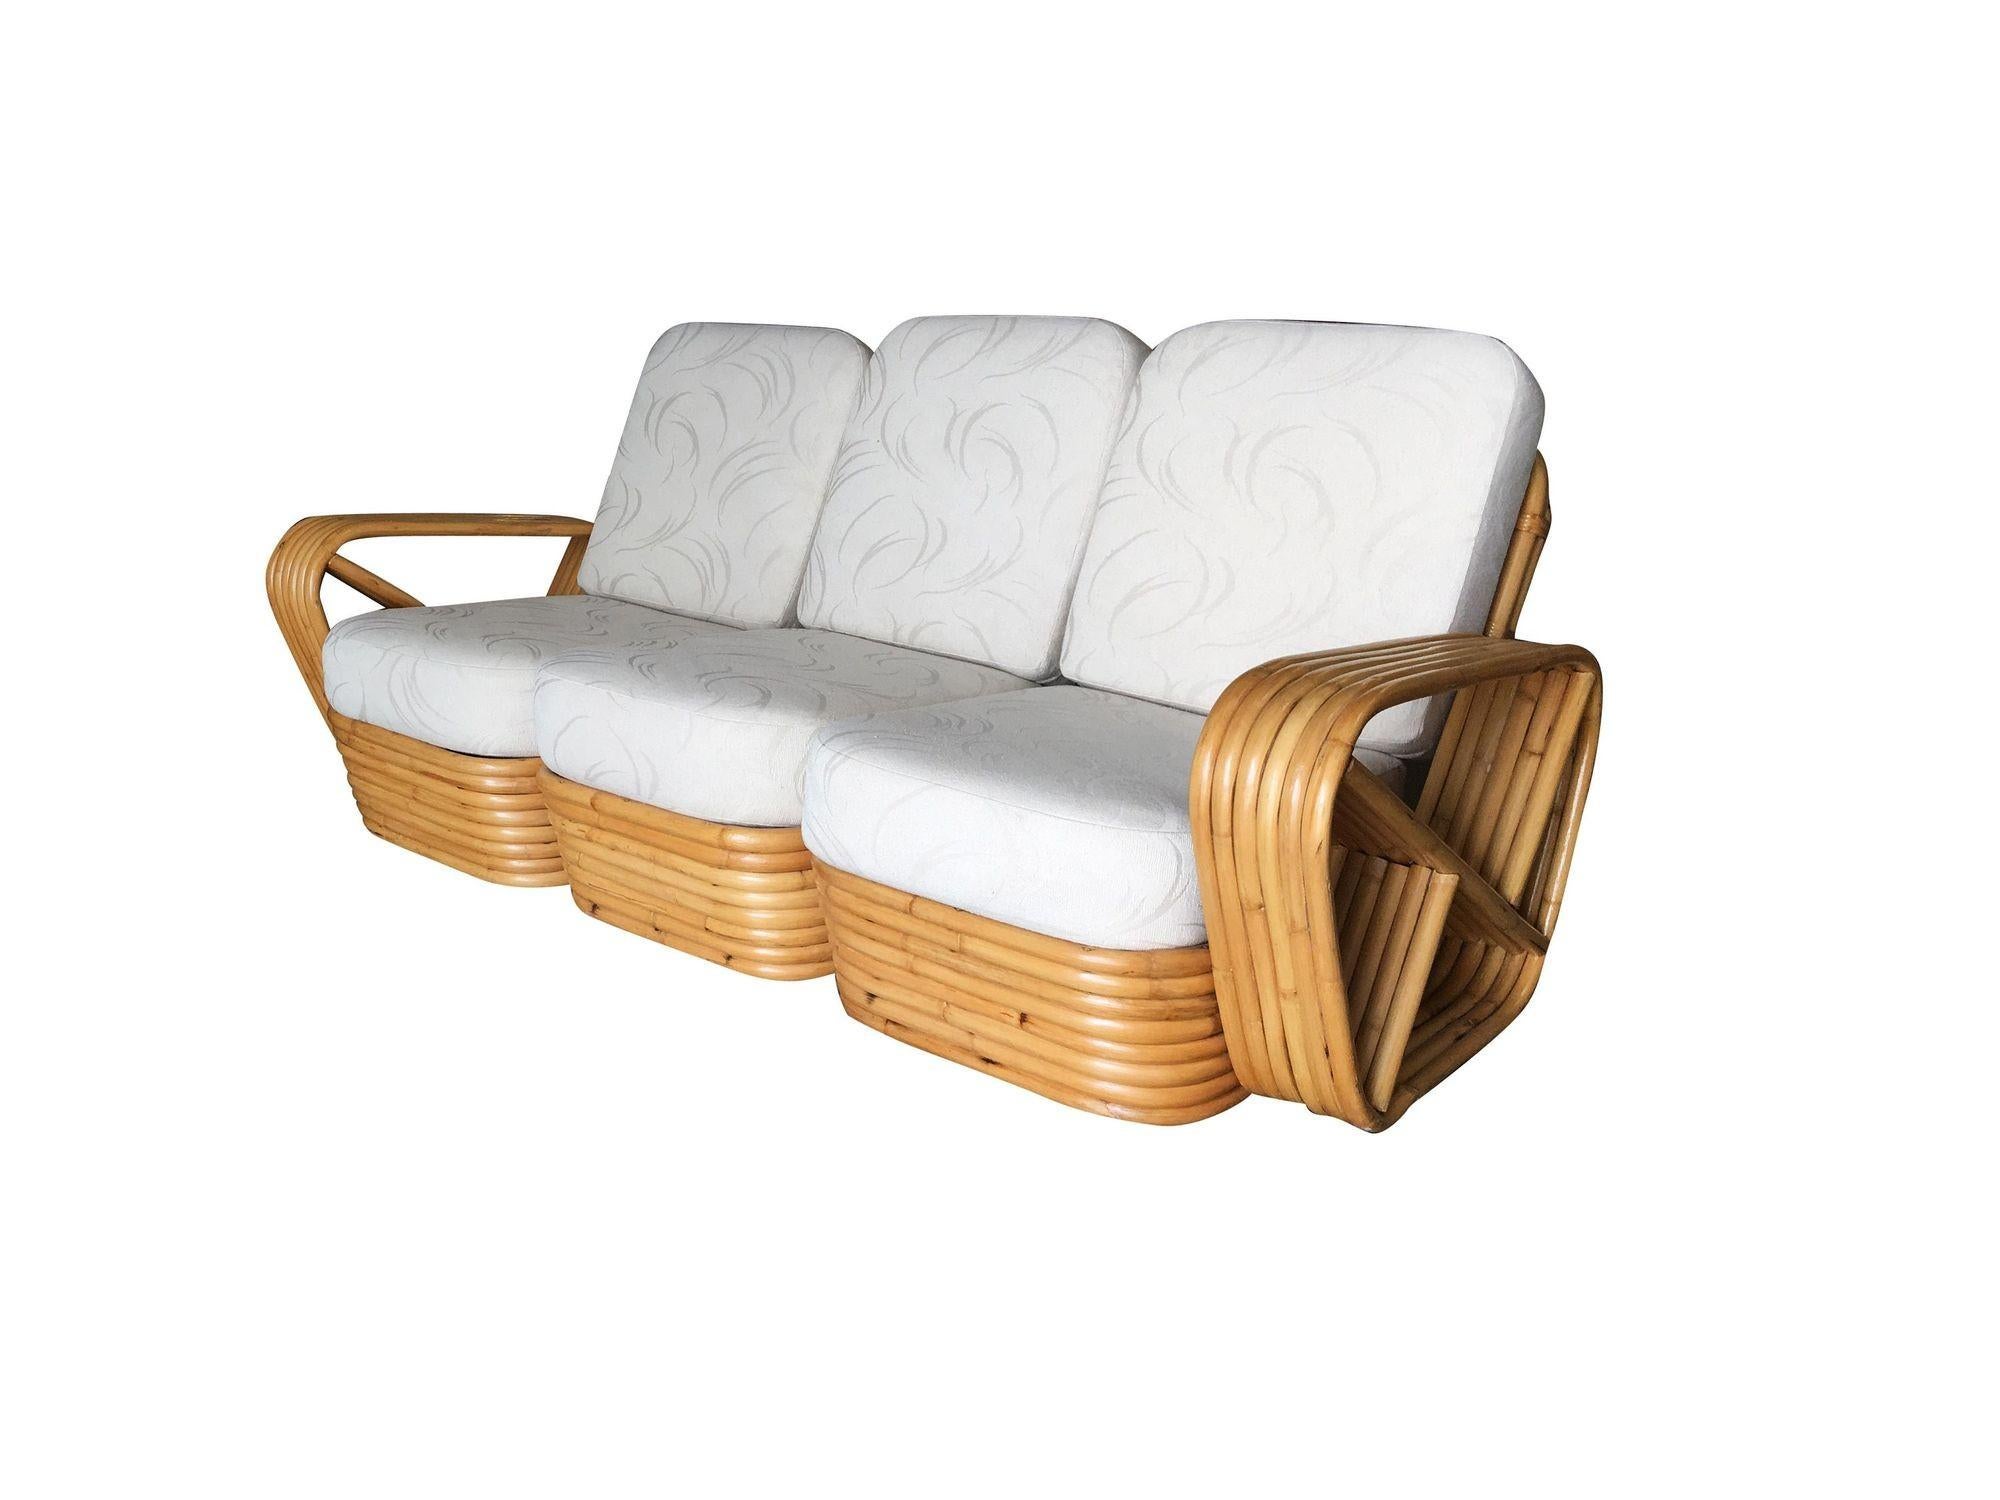 Sechsseitiges, quadratisches Brezel-Sofa mit drei Sitzen. Dieses Sofa verfügt über die berühmten fünfsträngigen, quadratischen Brezel-Seitenarme und ein gestapeltes Rattangestell, das ursprünglich von Paul Frankl entworfen wurde.
Maßnahmen:
Sofa: